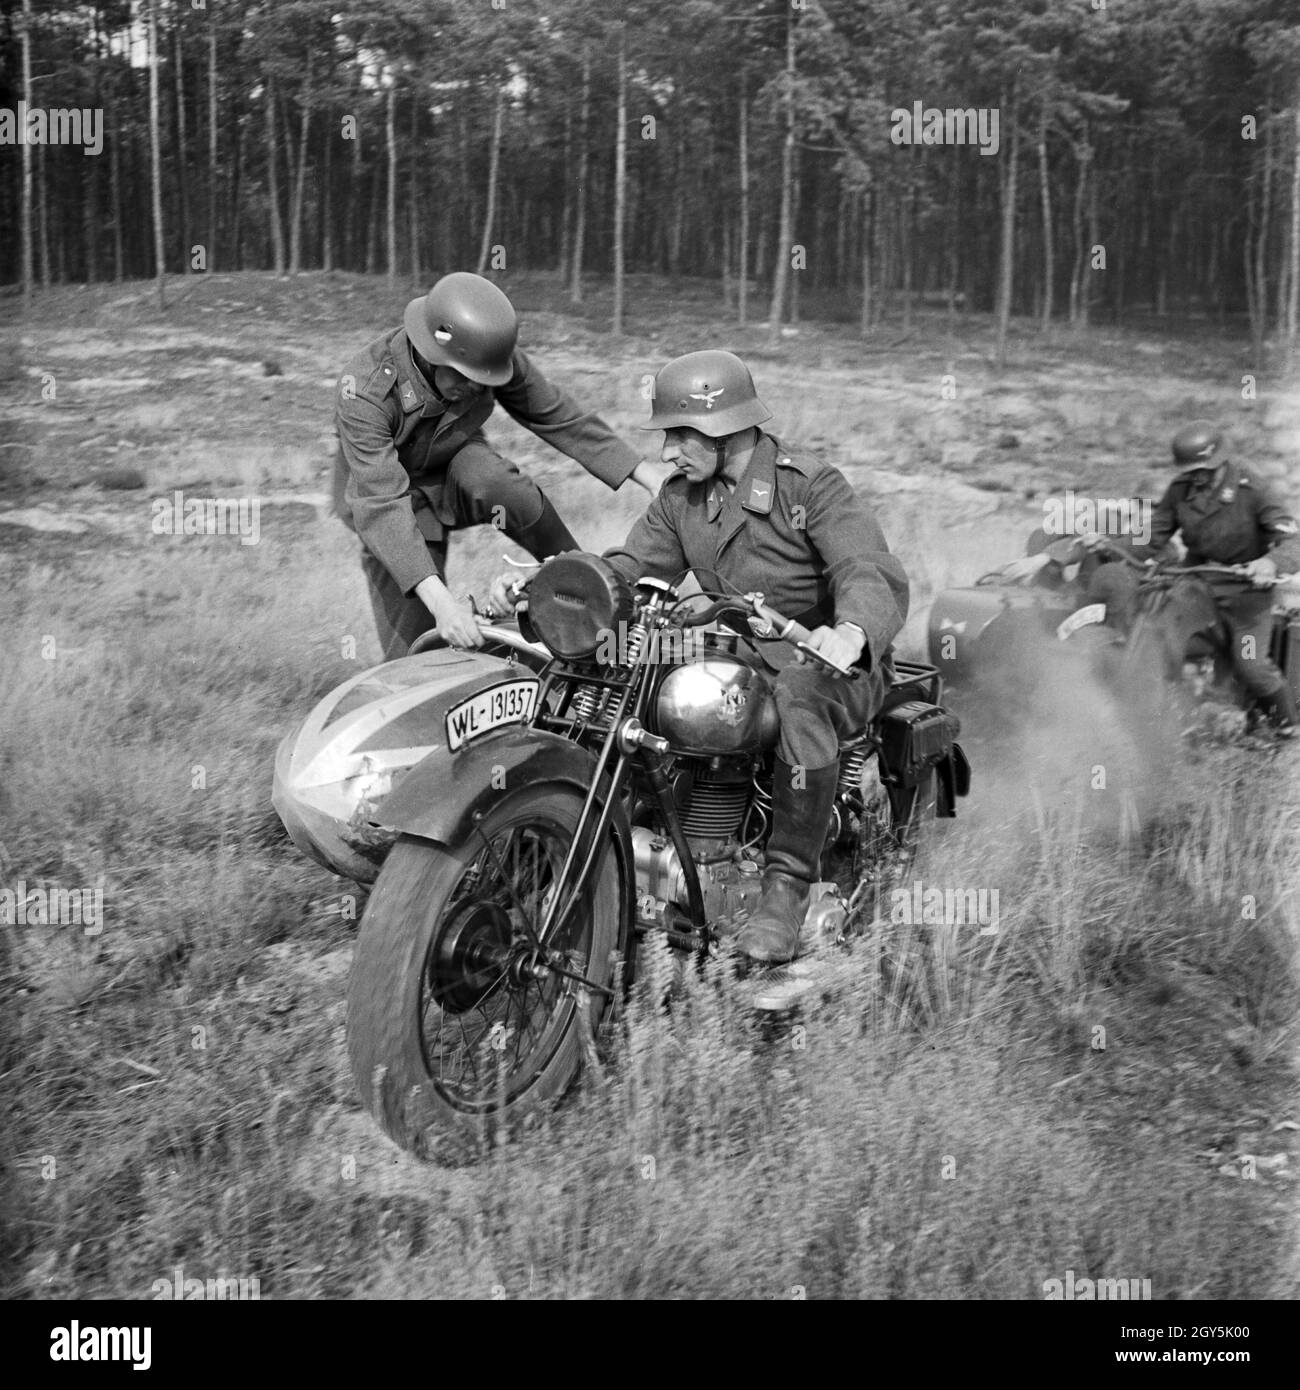 Original-Bildunterschrift: Soldaten lernern Kradfahren im Gelände, Deutschland 1940er Jahre. Soldati imparare a guidare una motocicletta, Germania 1940s. Foto Stock